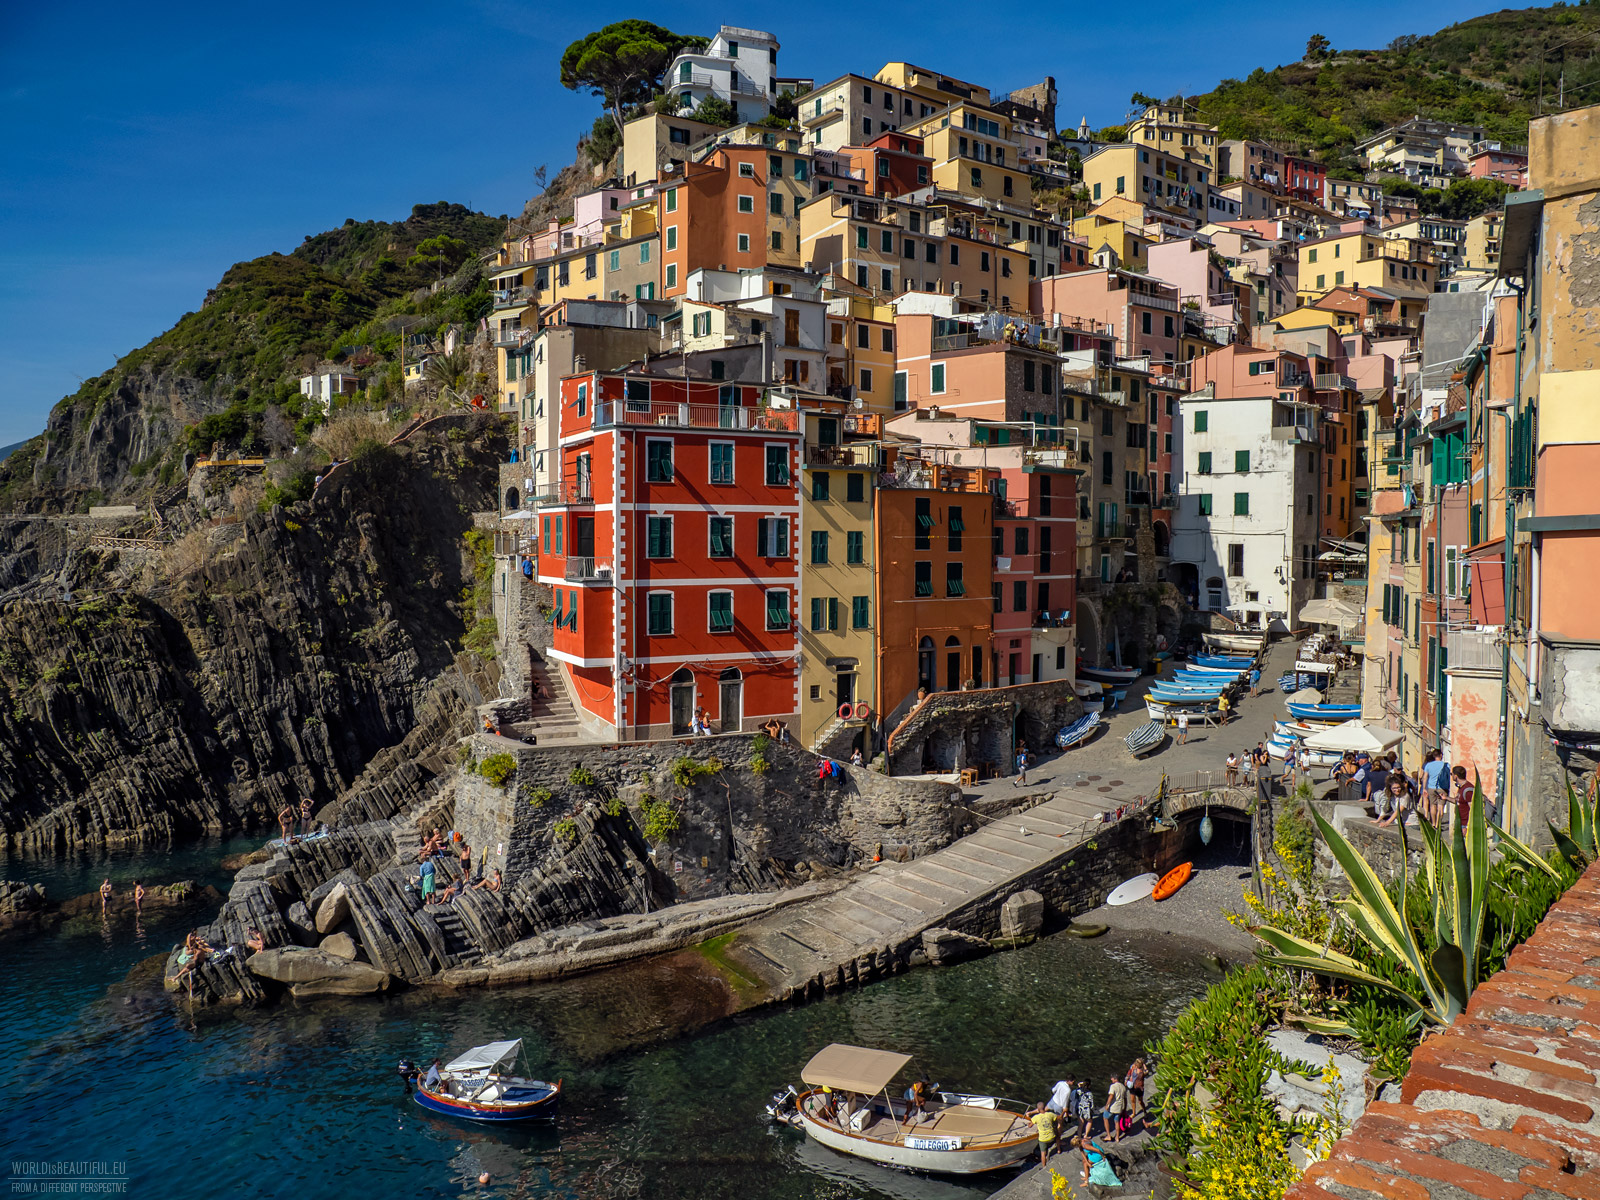 The most beautiful village in the Cinque Terre Riomaggiore